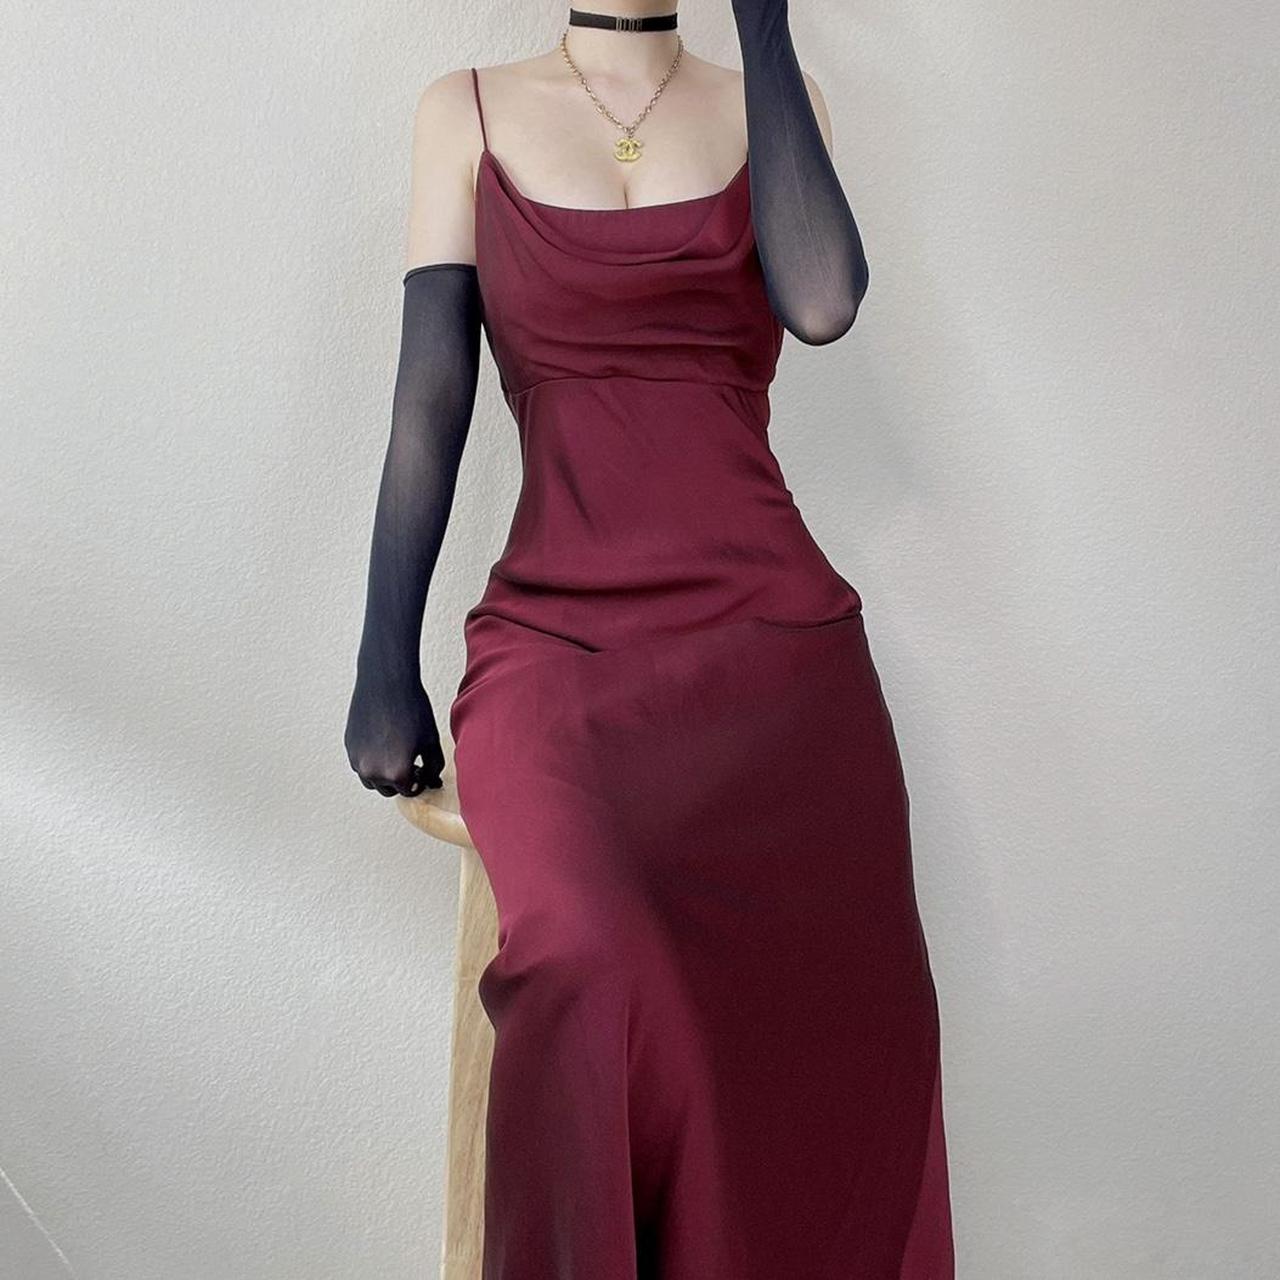 Y2K vampy dark burgundy chiffon gown goth prom dress... - Depop